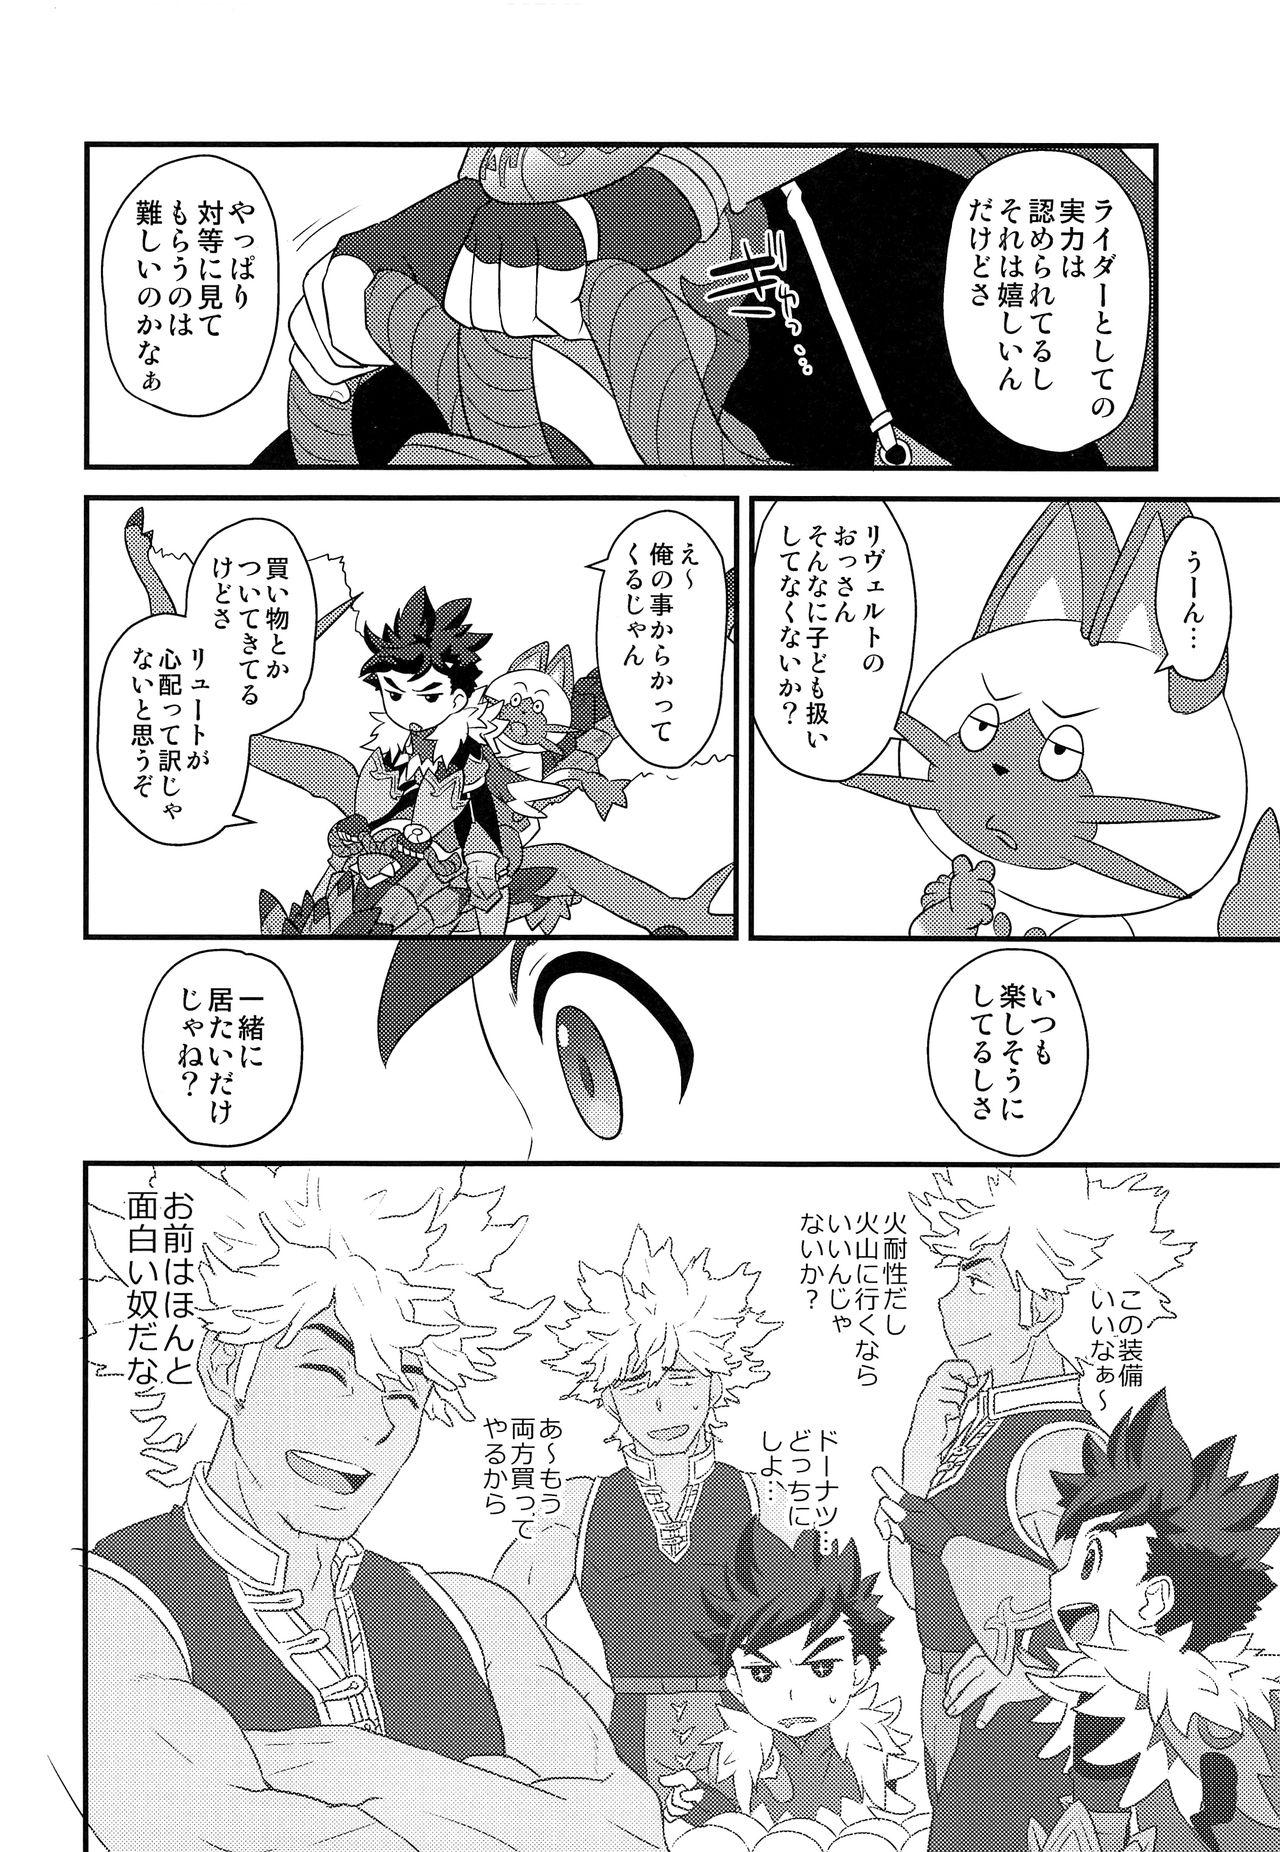 Leite Koi no Shibire Wana - Monster hunter Chick - Page 9